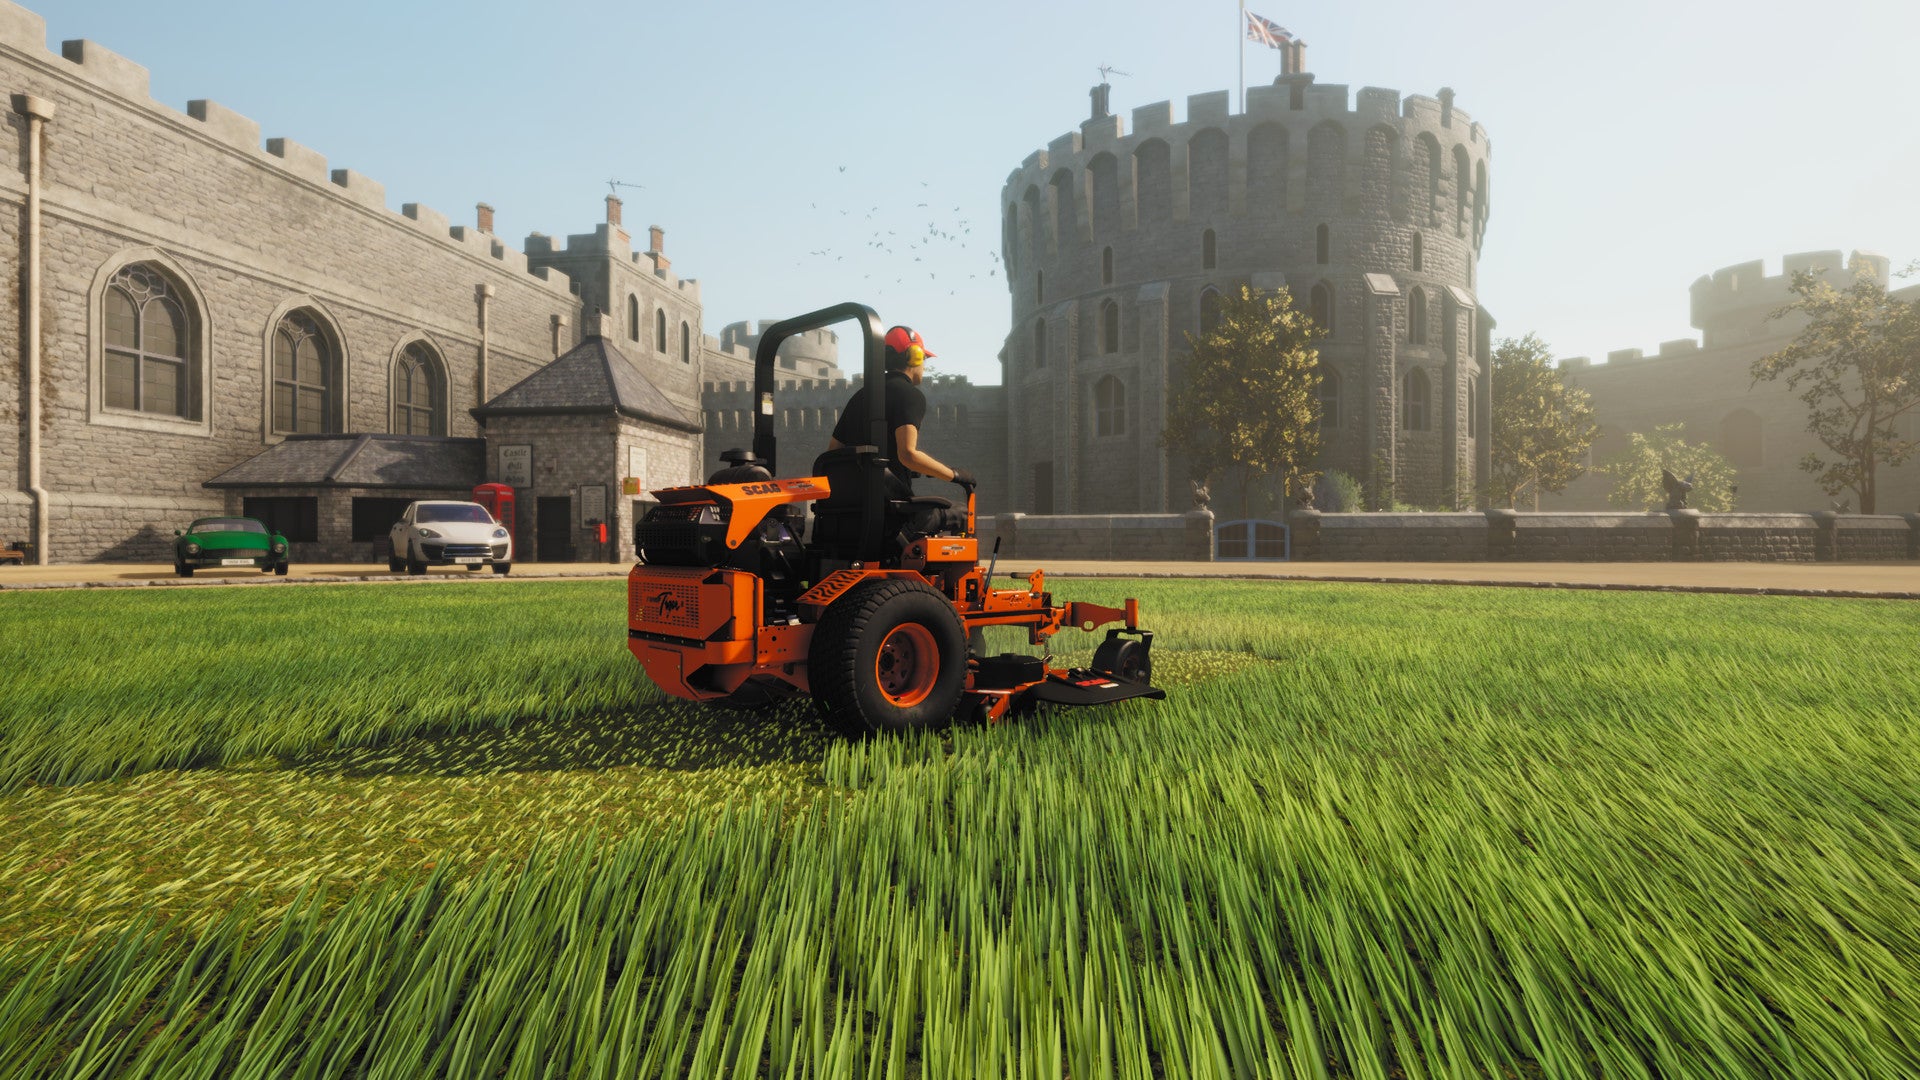 Imagen para Lawn Mowing Simulator es el juego gratuito de la Epic Games Store de la semana que viene